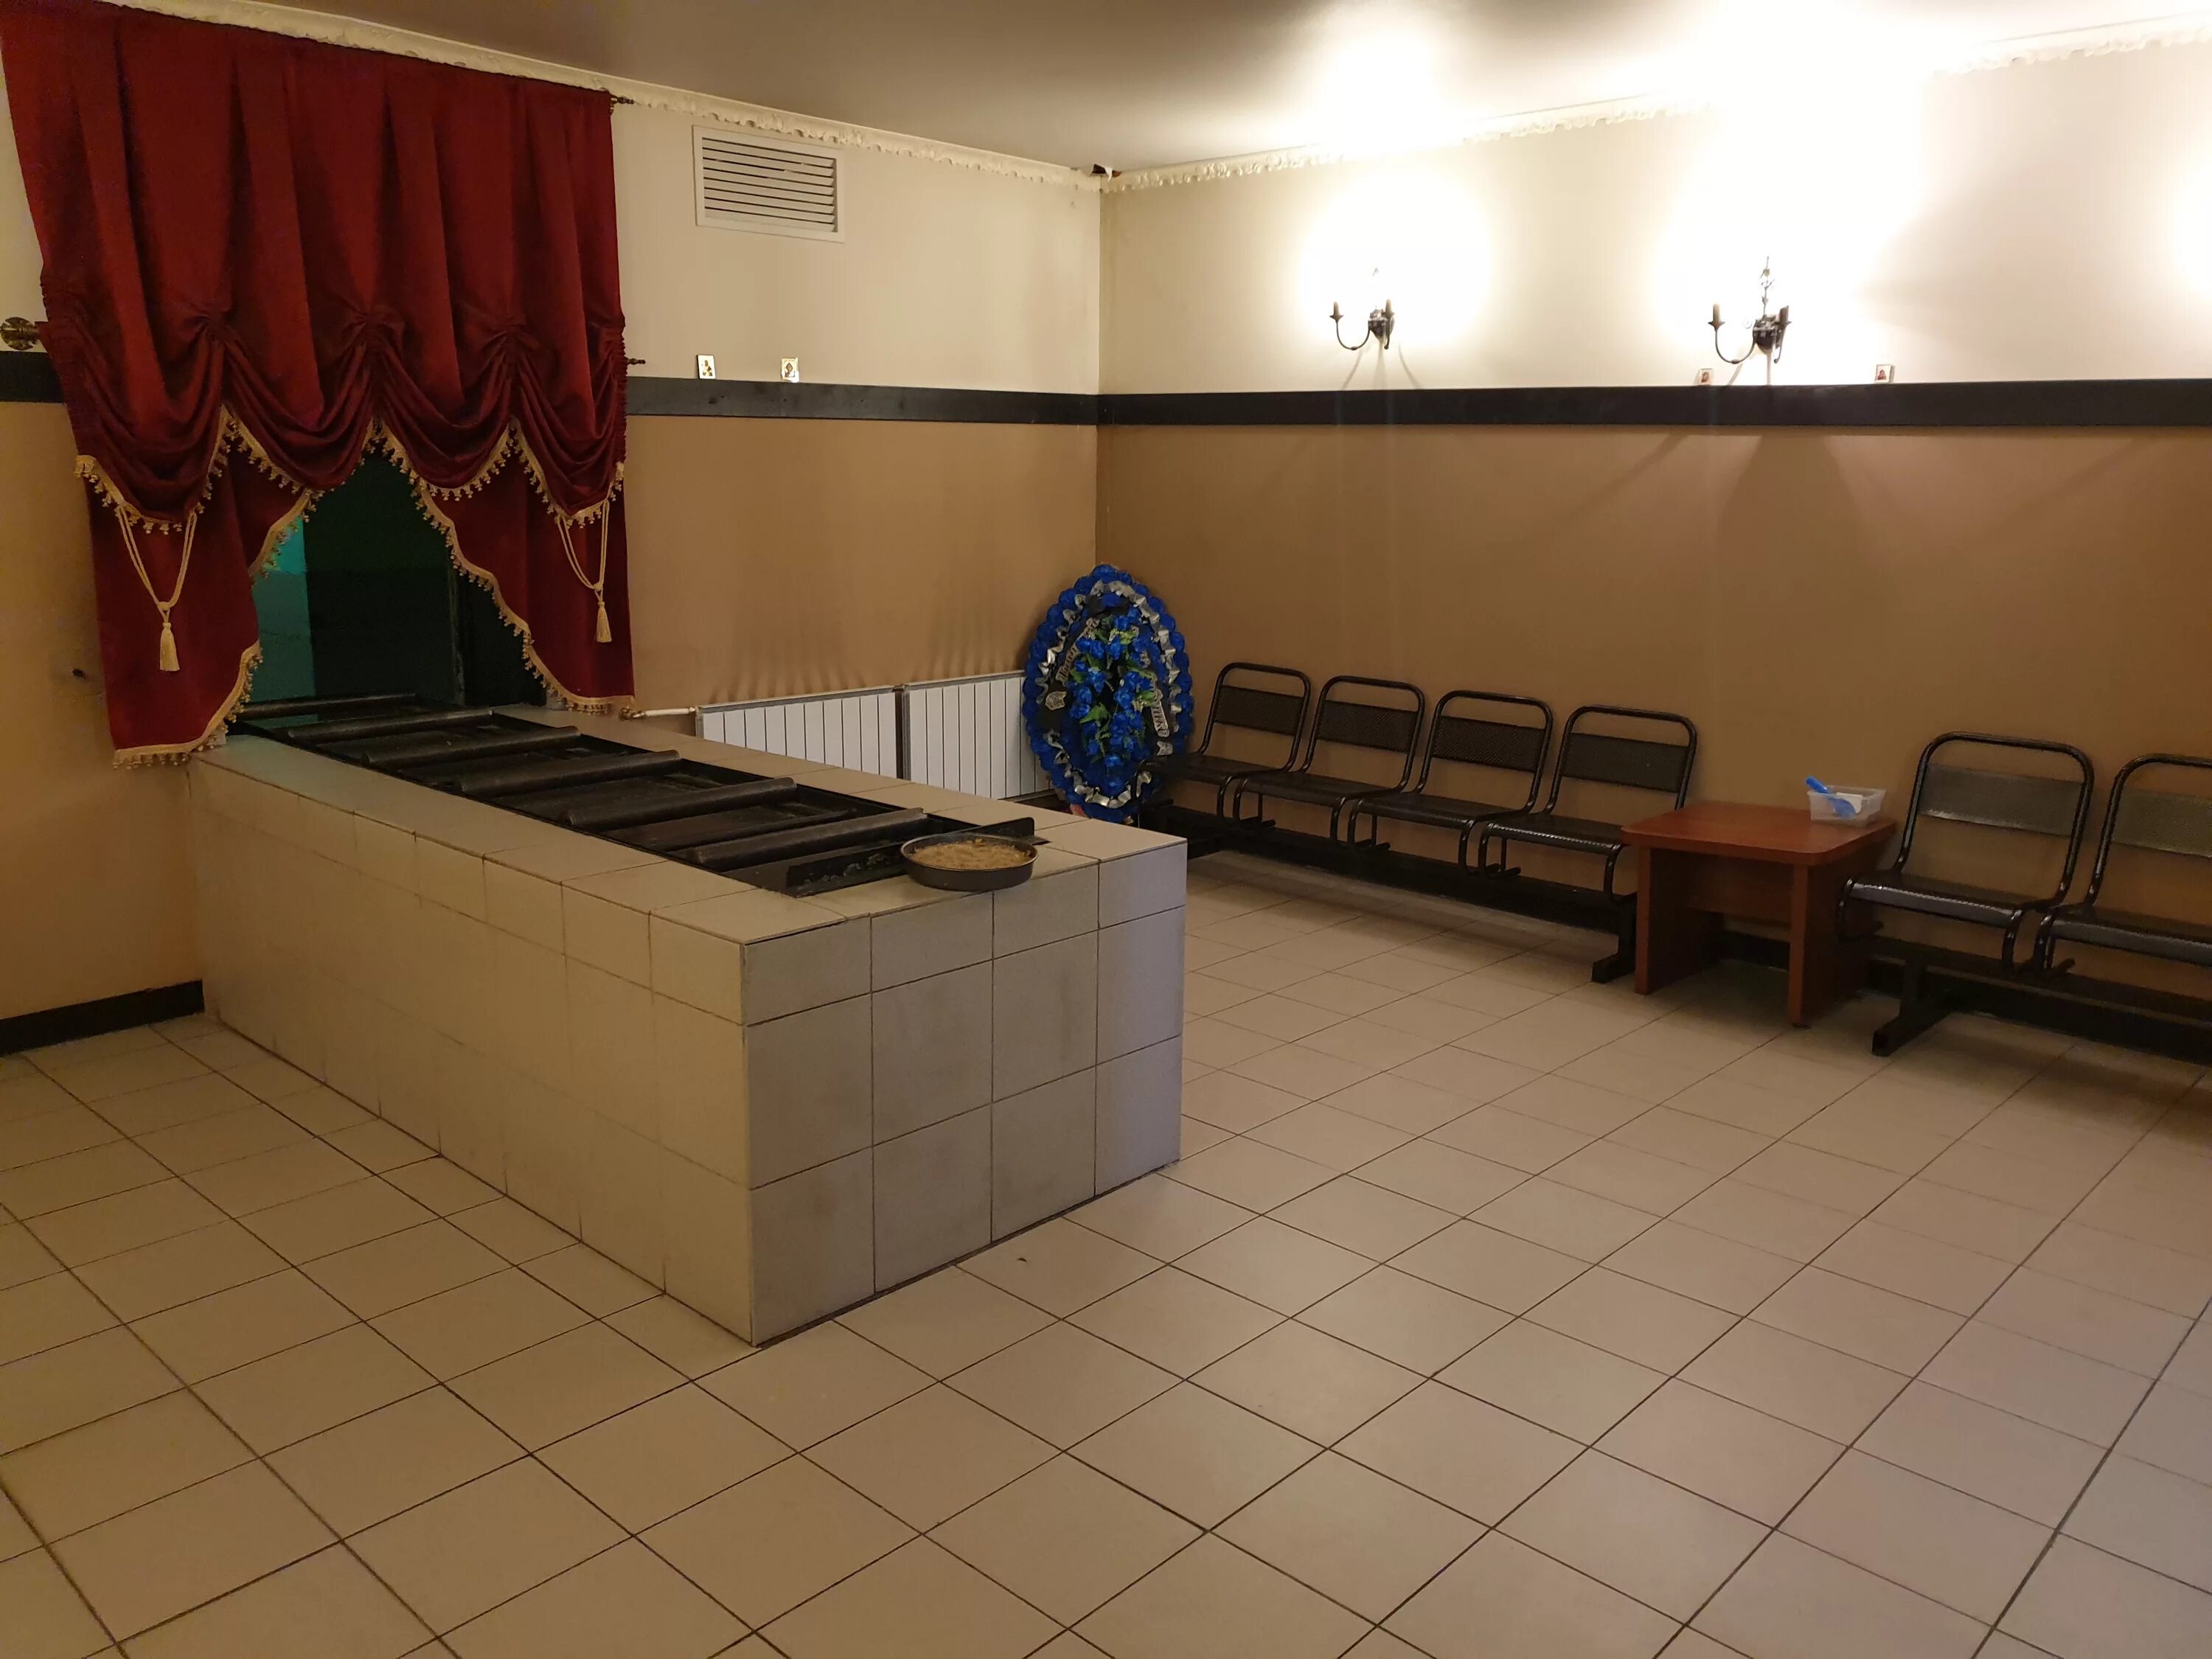 Прощальный зал в крематории СПБ. Малый зал крематория СПБ. Прощальный зал крематория Екатеринбург. Крематорий ритуальный зал. Залы крематория